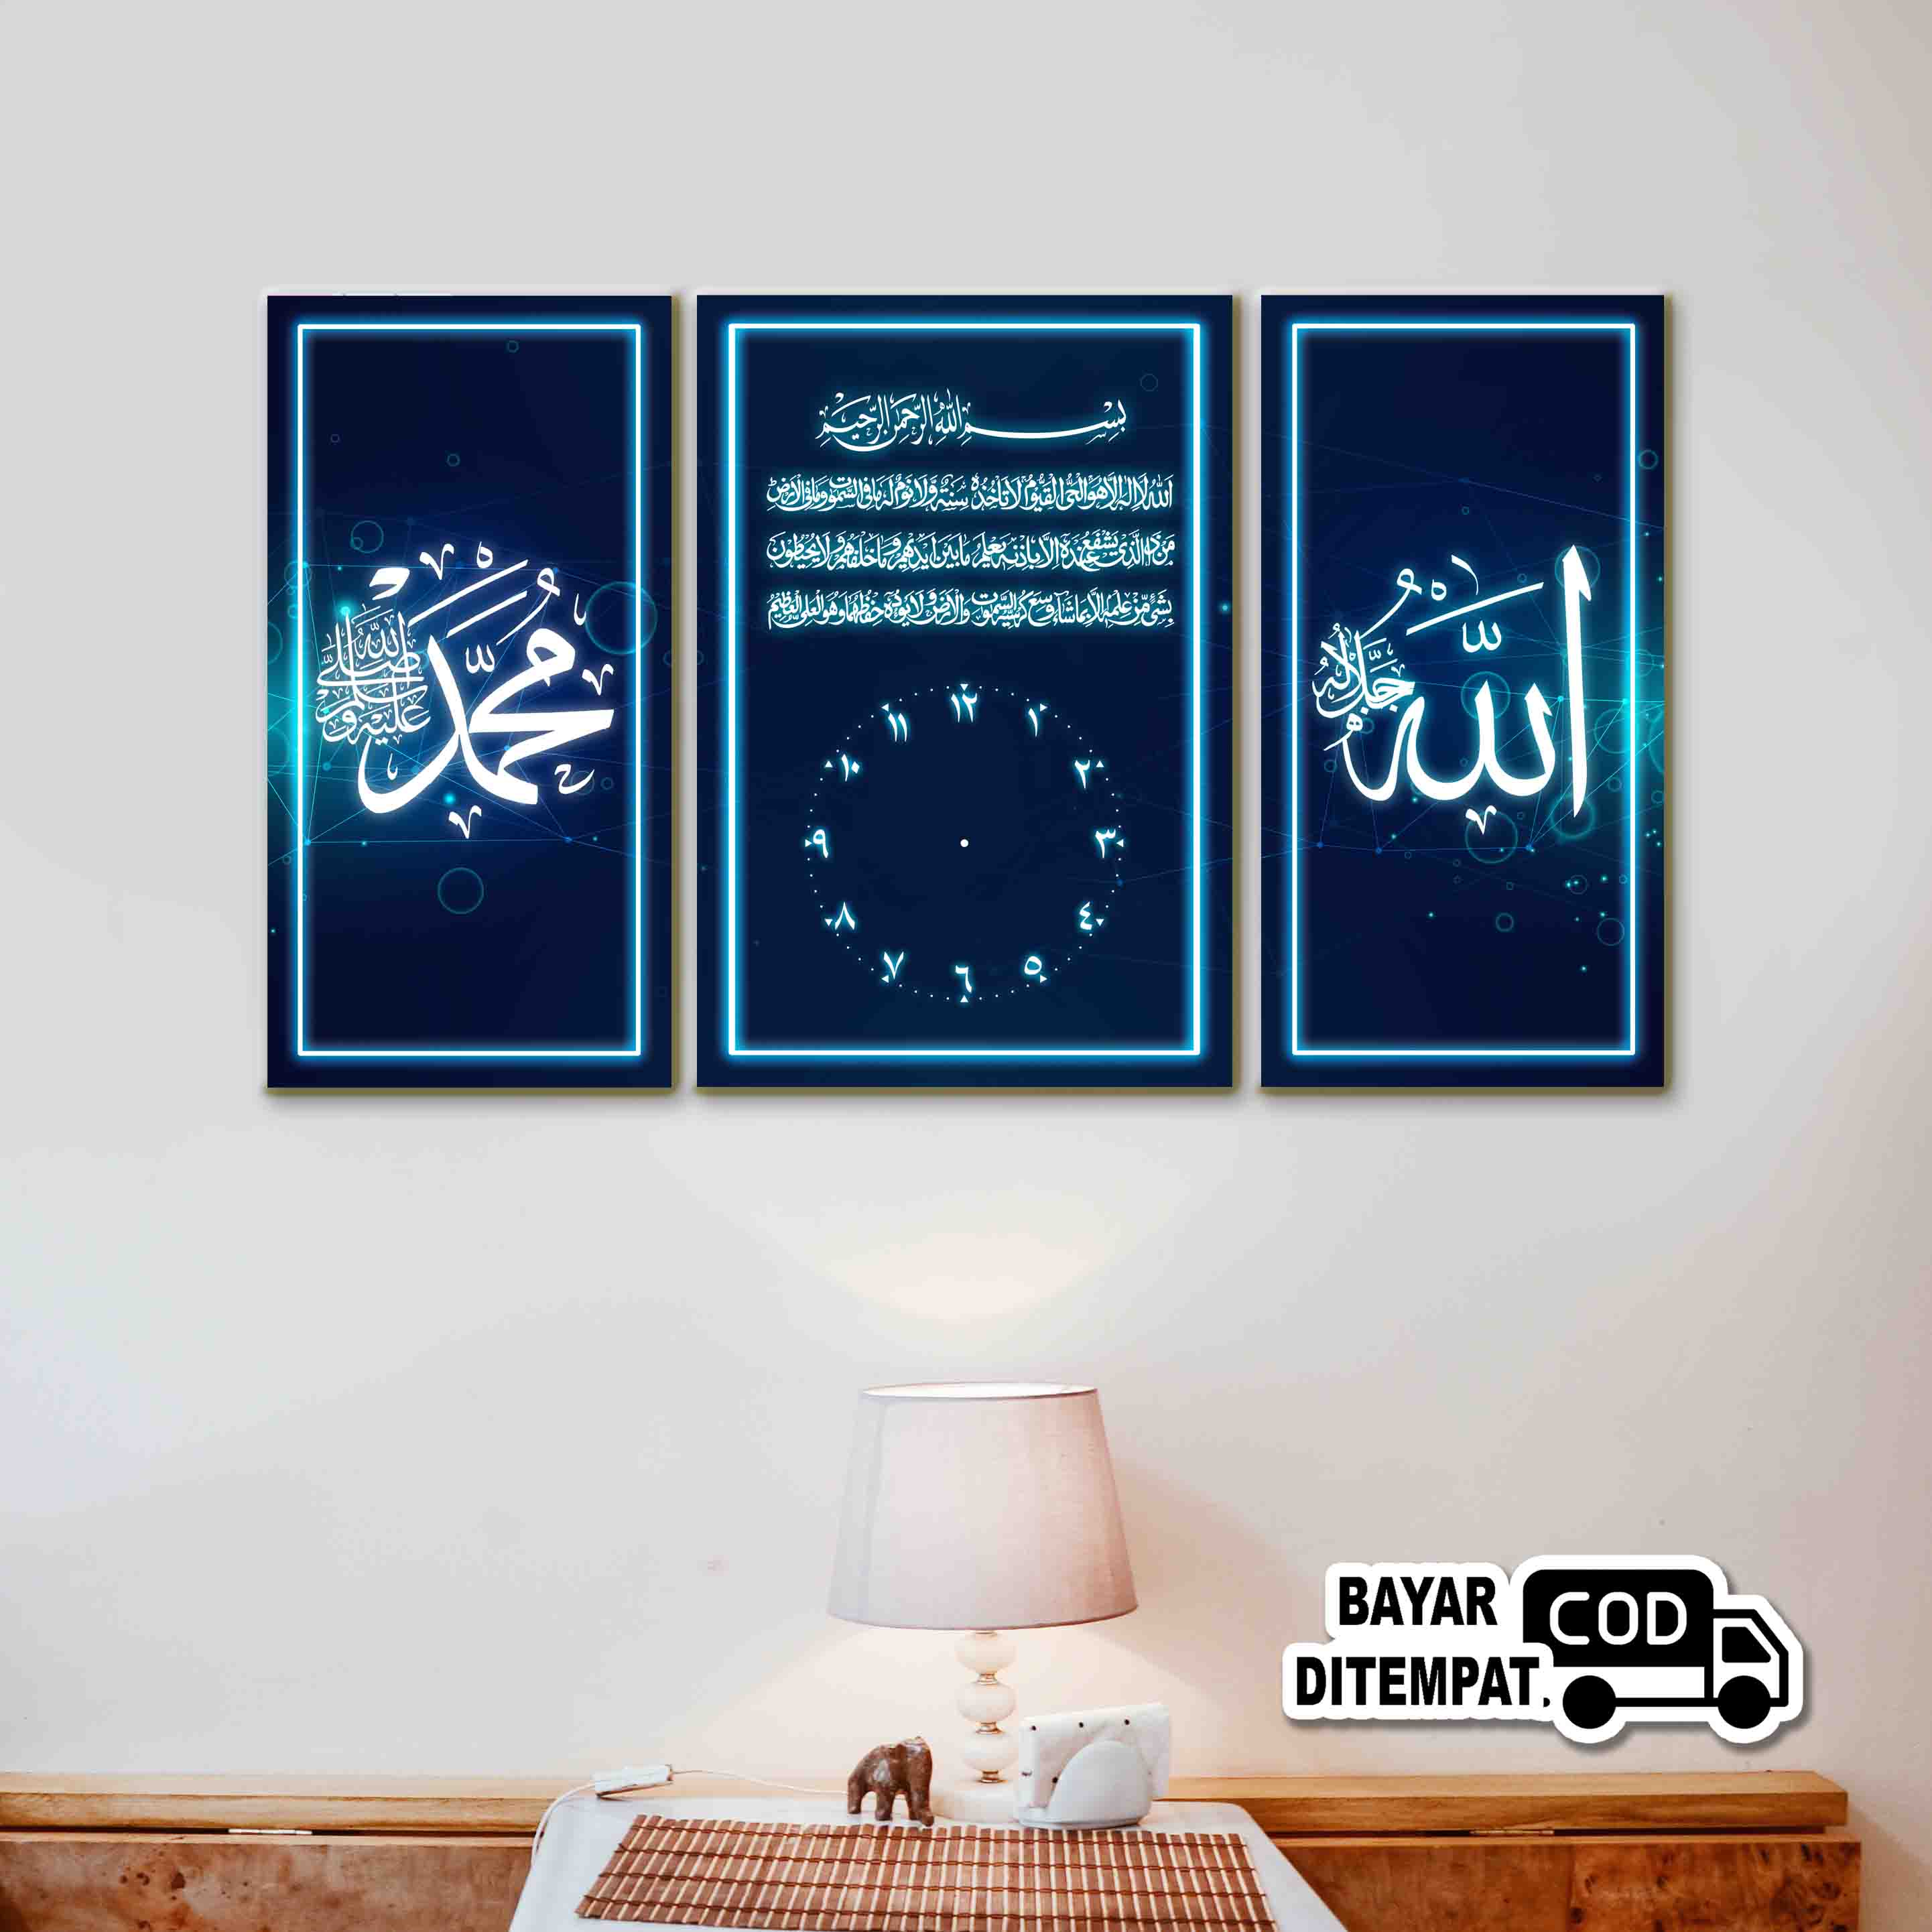 UGIARTS KJ-3 Hiasan Jam Dinding Kaligrafi Lafadz Allah Muhammad Ayat Kursi / Pajangan Rumah Masjid Majelis / Jam Kayu / Hiasan Dinding / Wall decor / Jam Dinding Unik